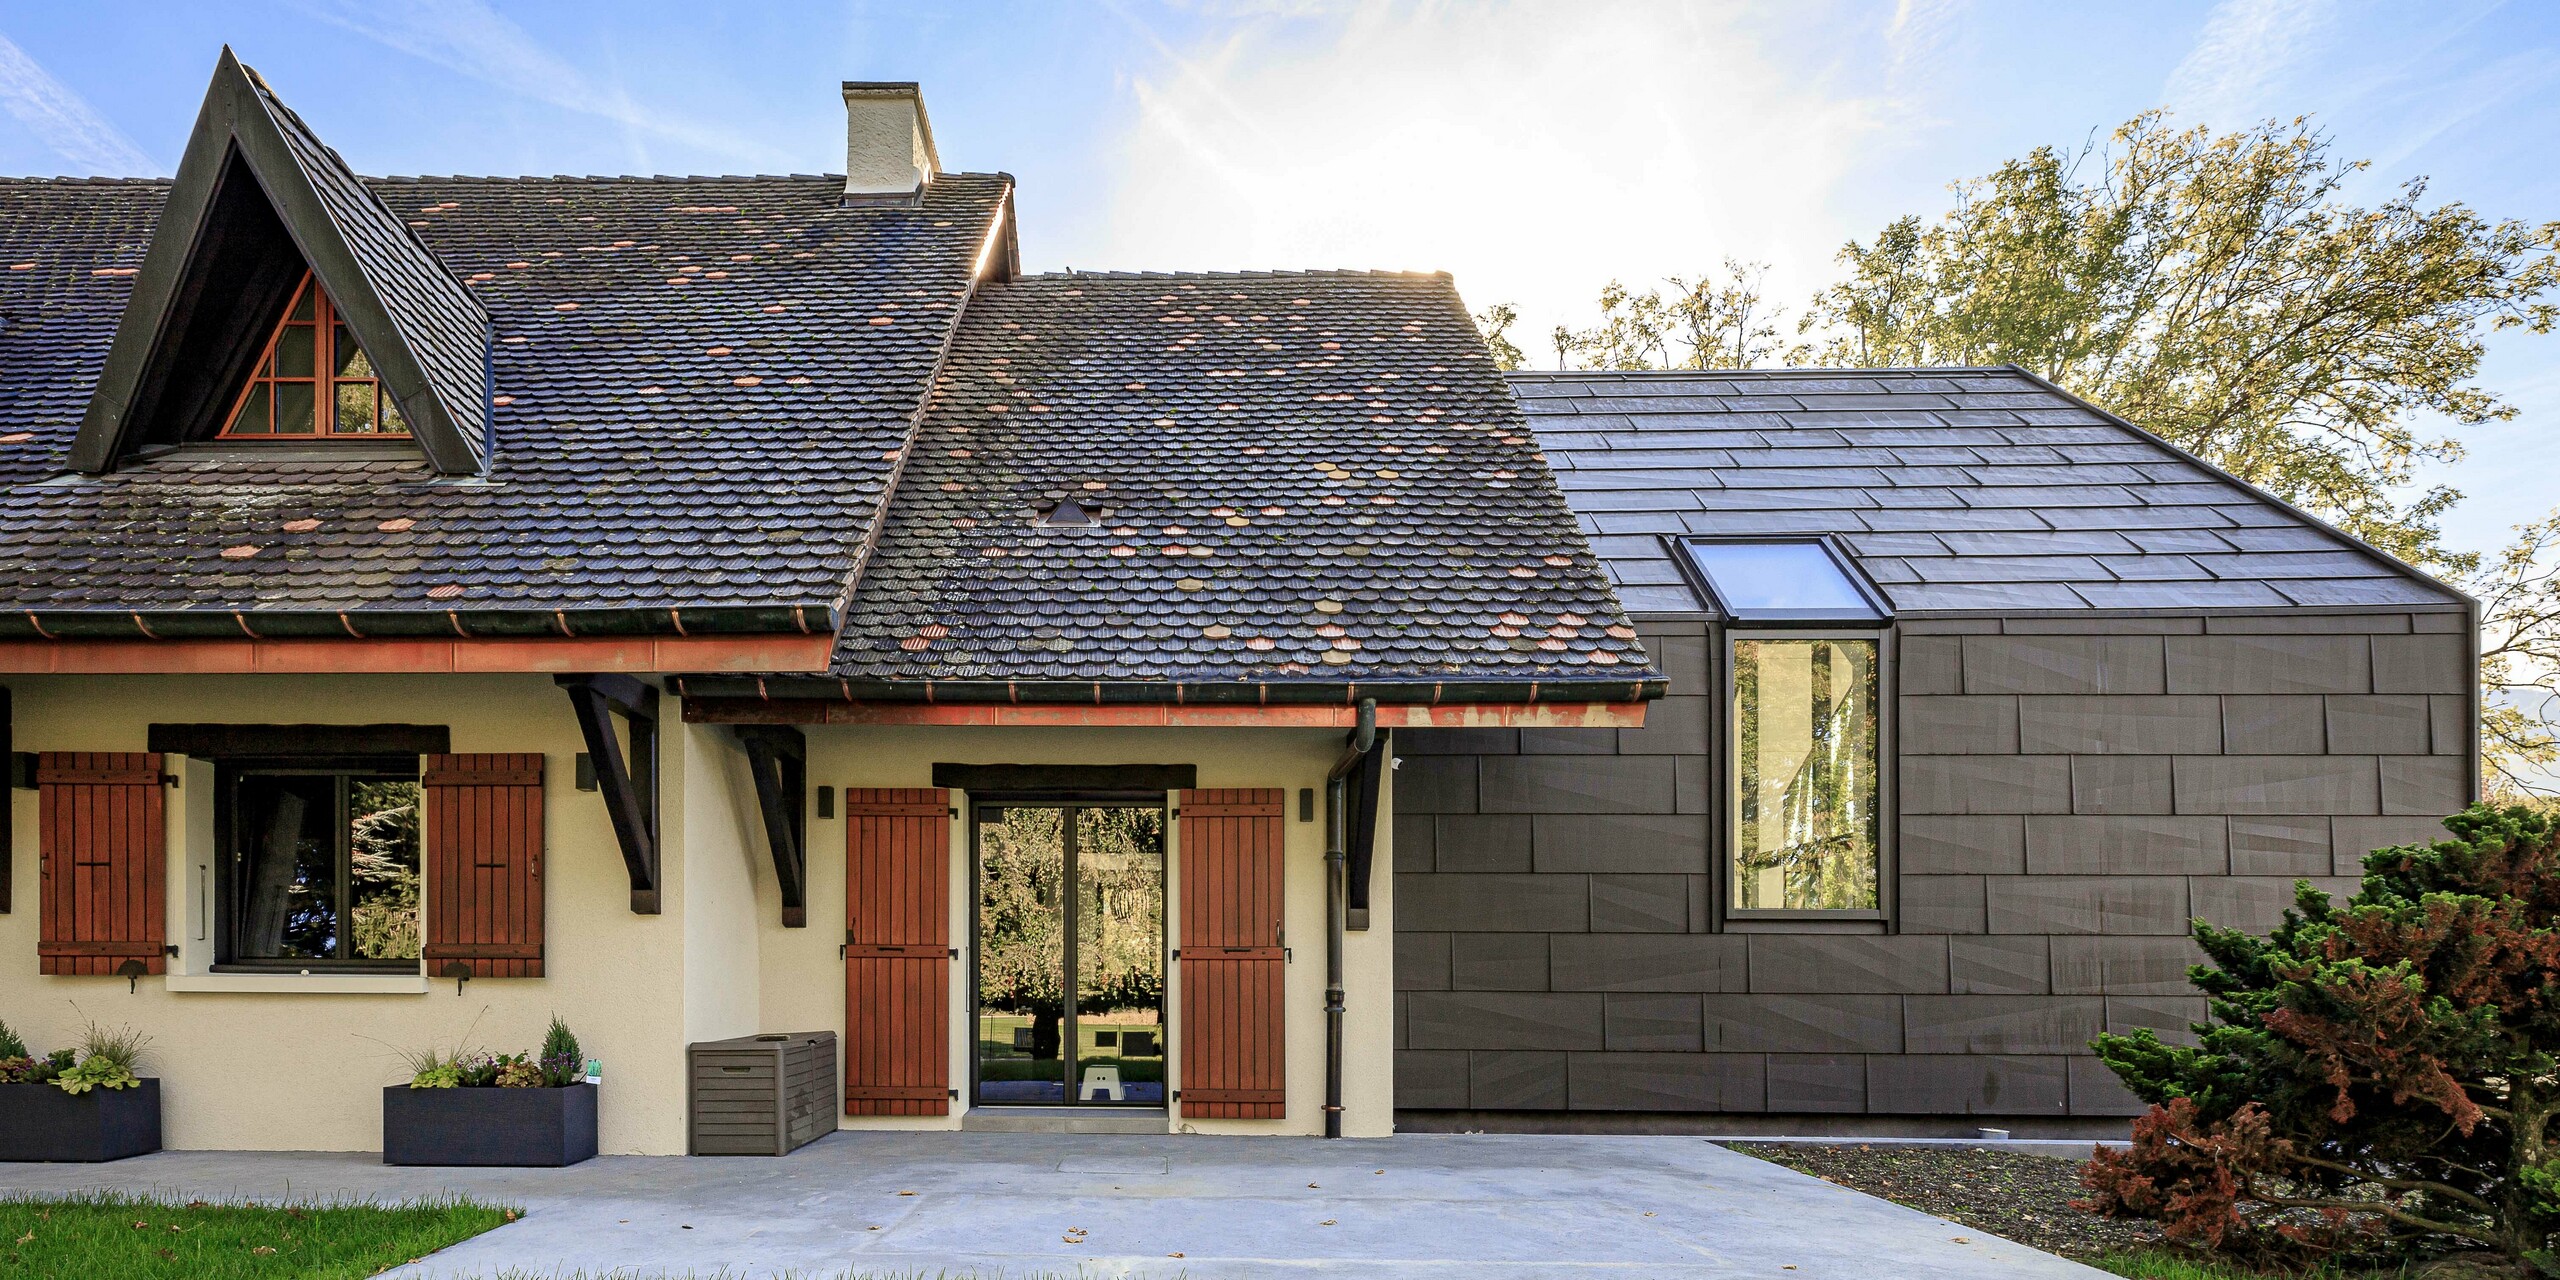 PREFA Dach- und Fassadenpaneele FX.12 in P.10 Braun als kontrastreiches Designelement auf dem Zubau eines Einfamilienhauses in Lully